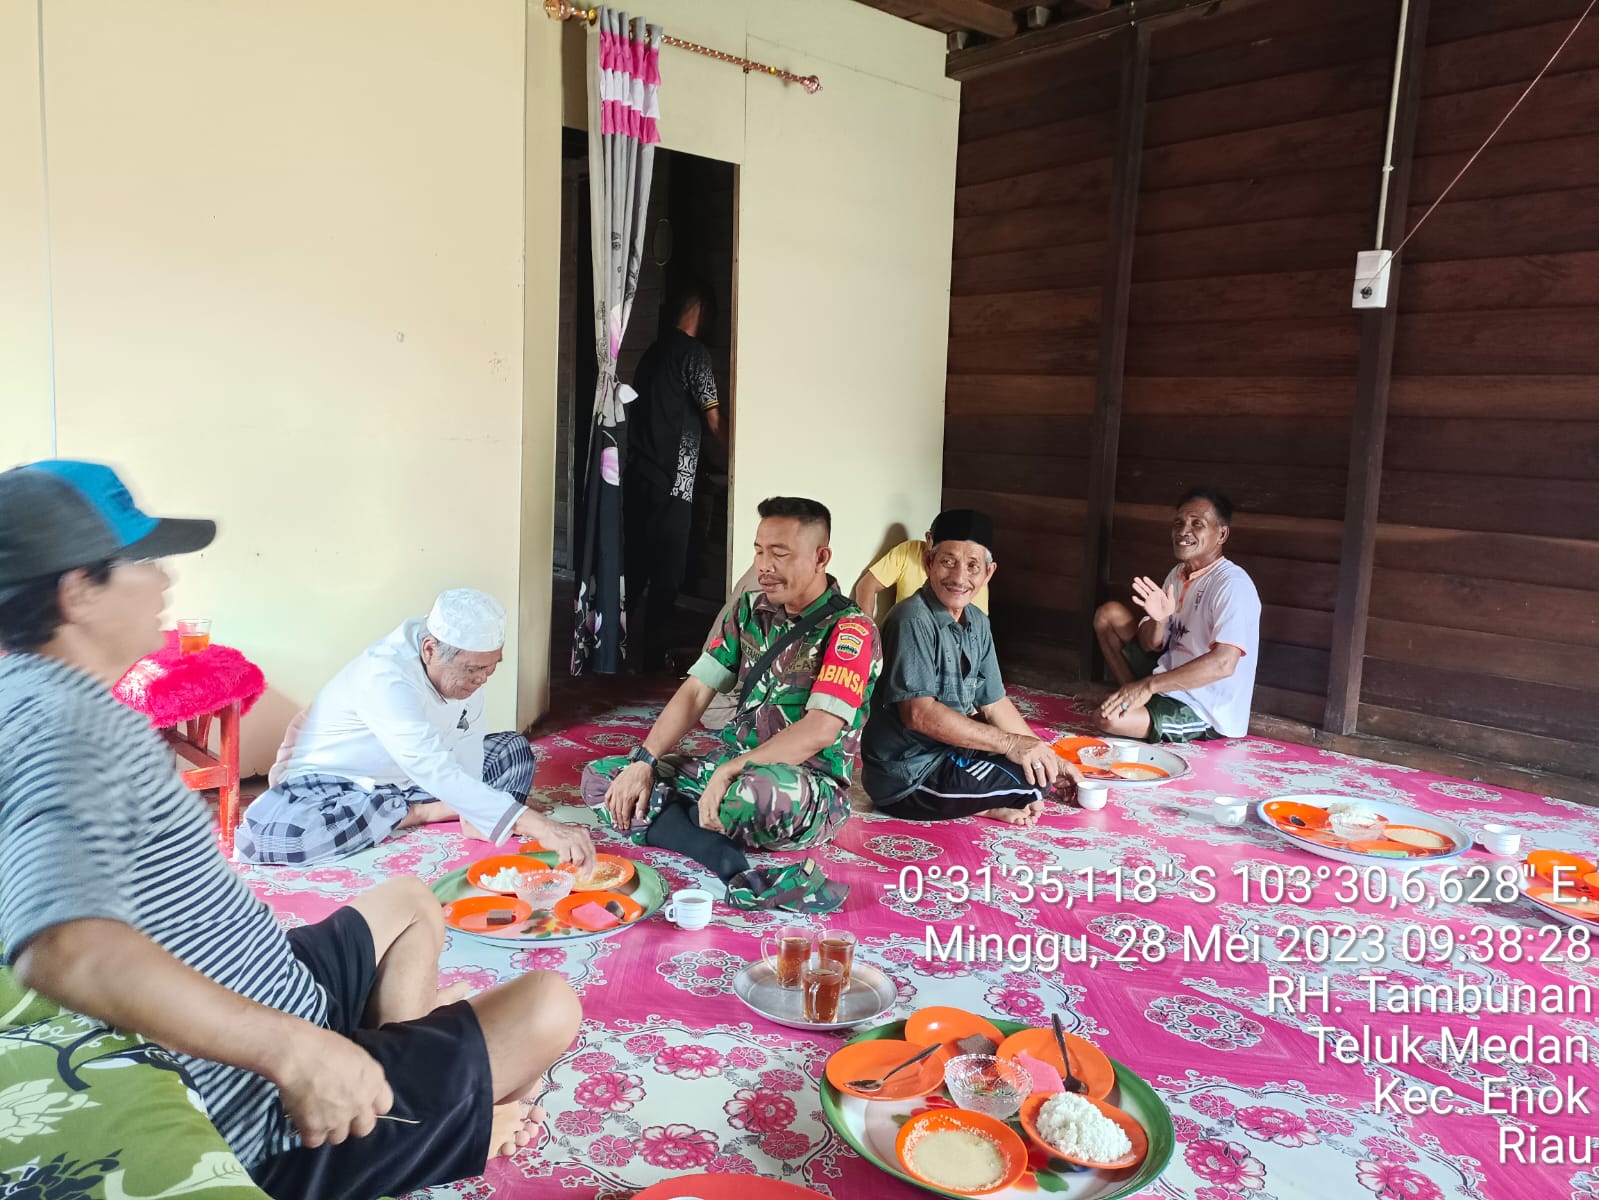 Babinsa Koramil 02/TM Koptu RH Tambunan Hadiri Undangan Kenduri Warga di Kelurahan Teluk Medan 